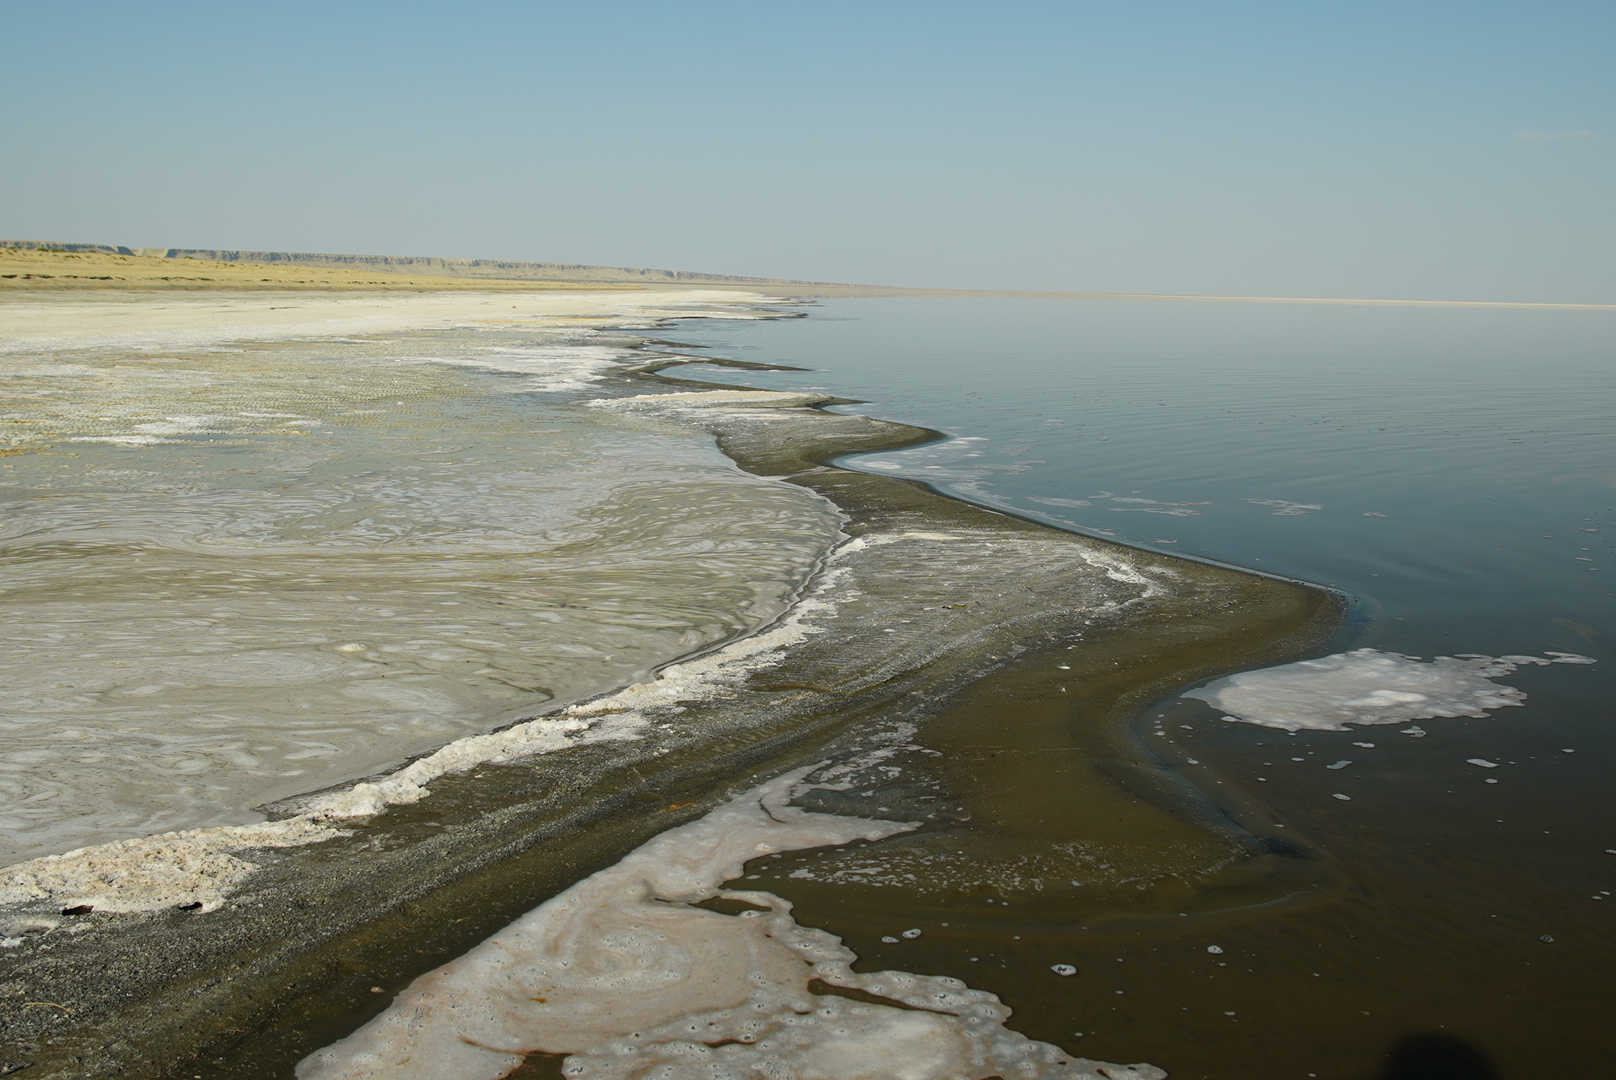 La documentalista audiovisual Laura Carrau, autora de esta foto del paisaje litoral de la zona inundada del Mar de Aral, también forma parte del grupo del trabajo